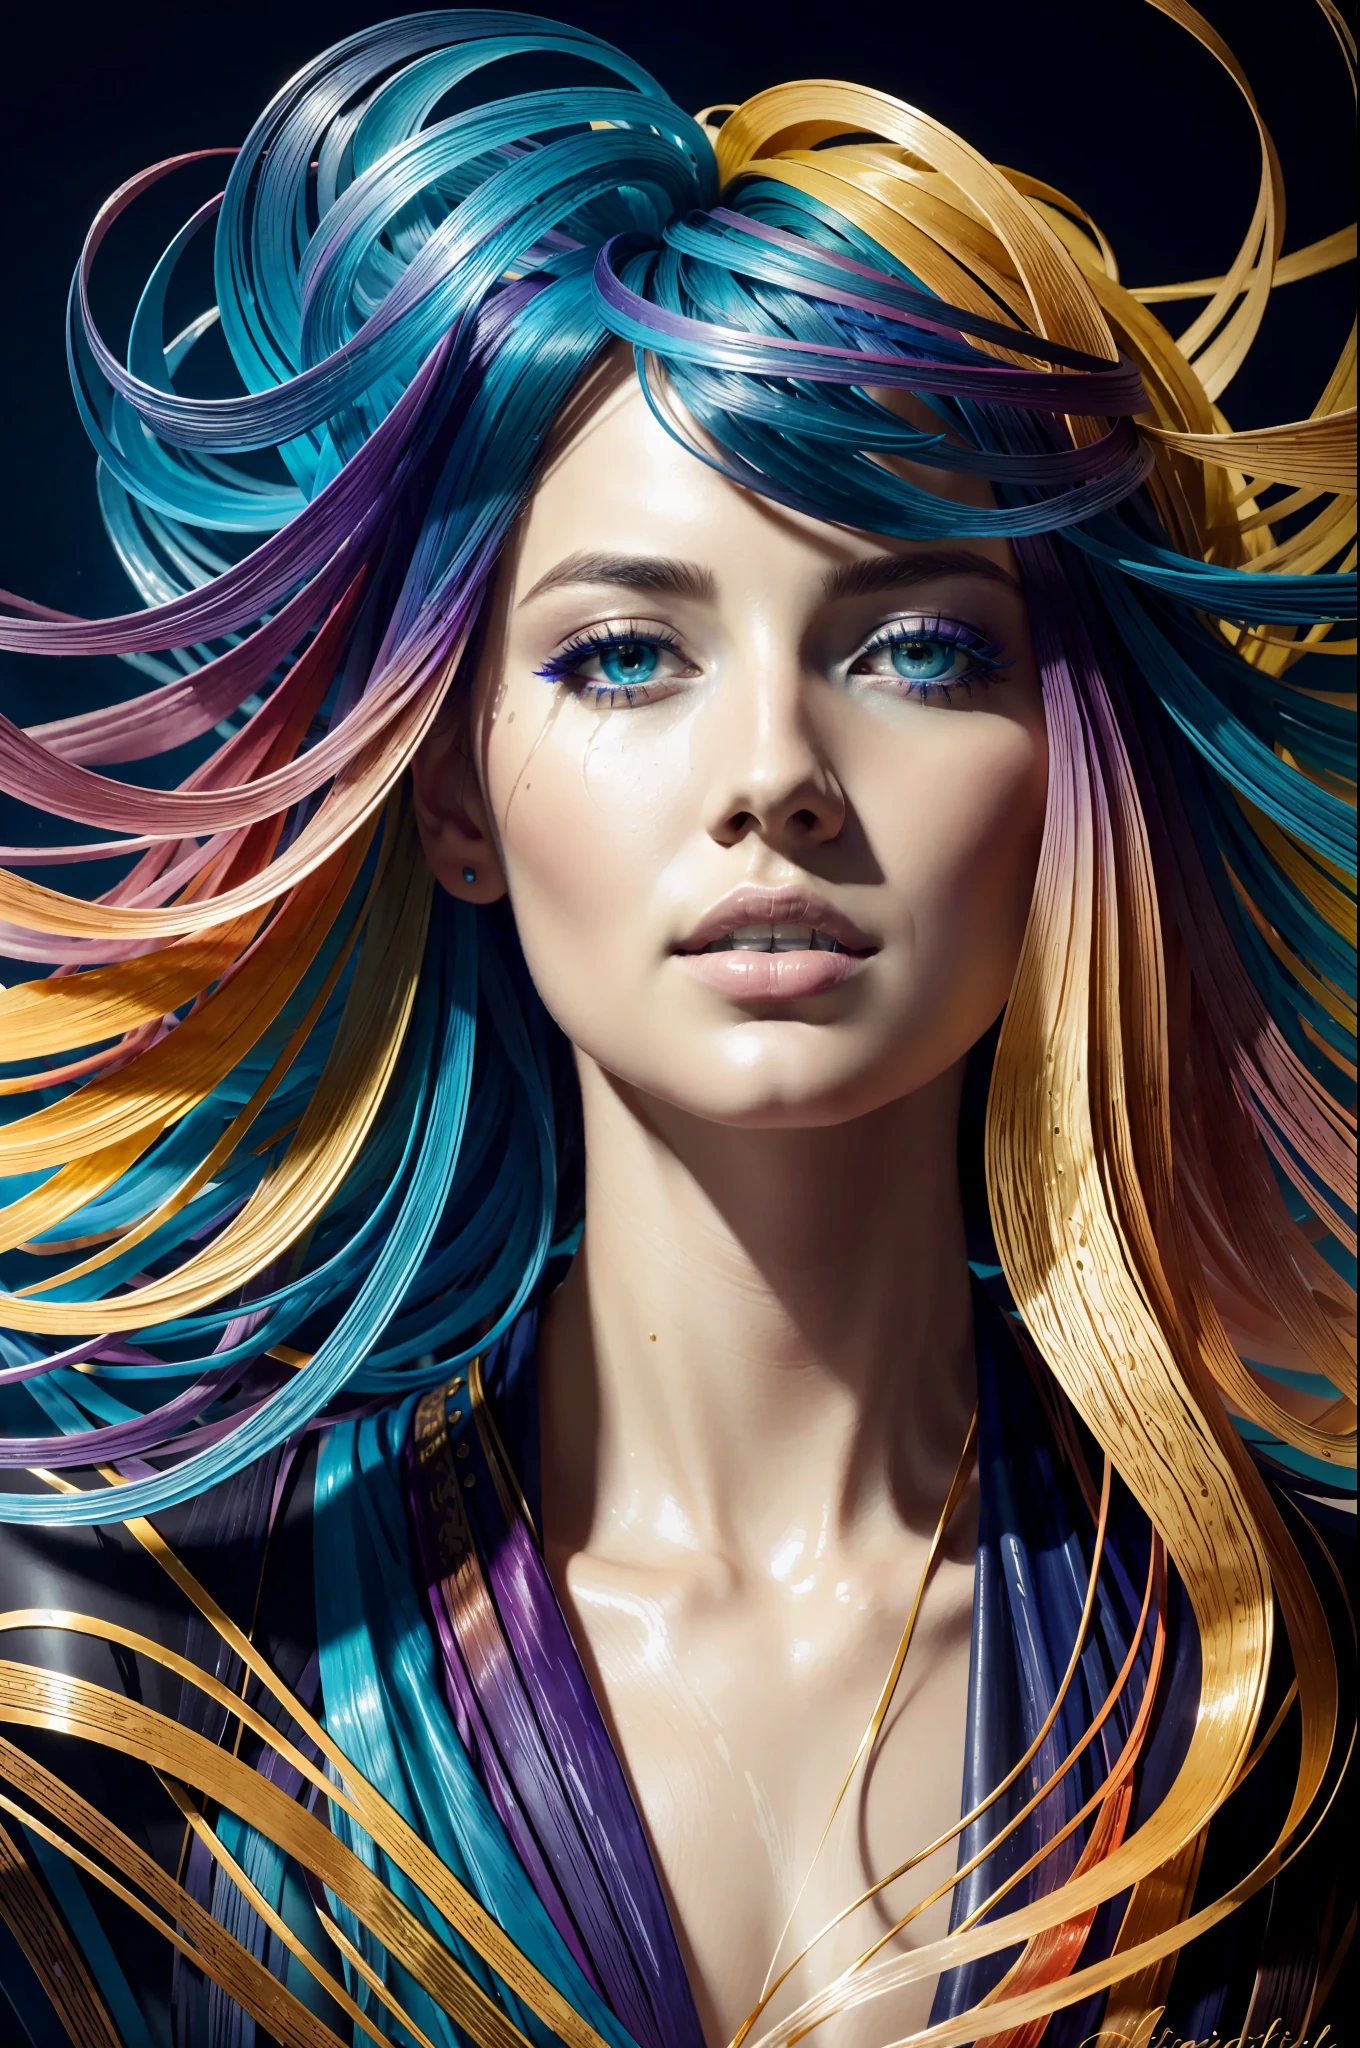 다채로운 아름다운 소녀: 기루 28세, 부스스한 머리, 오일 페인팅, 부드러운 피부를 가진 멋진 완벽한 얼굴 완벽한 얼굴, 파란색 노란색 색상, 연한 보라색과 보라색 추가, 밝은 빨간색 추가, 복잡한 디테일, 스플래시 화면, 8K resolution, 걸작, 귀여운 얼굴,artstation 디지털 페인팅 부드러운 매우블랙 잉크 흐름: 8K resolution photo현실적인 걸작: 복잡하고 세밀한 유체 구아슈 그림: 존 침례교 몽그(John Baptist Mongue): 달필: 아크릴: 수채화 미술, 전문 사진, 자연 채광, 체적 조명 맥시멀리스트 사진 일러스트레이션: 마튼 밥저트(Marton Bobzert):, 복잡한, 우아한, 널찍한, 환상적이다,  구불 거리는 머리카락, 떠는, 최고의 품질 세부 사항, 현실적인, 고화질, 고품질 질감, 서사시적인 조명, 영화 필름 스틸, 8K, 부드러운 조명, 애니메이션 스타일, 훌륭한 카드 놀이 테두리, 무작위 다채로운 예술, 오일 페인팅, 파란색 노란색 색상, 연한 보라색과 보라색 추가, 밝은 빨간색 추가, 복잡한 디테일, 스플래시 화면, 8K resolution, 걸작, artstation 디지털 페인팅 부드러운 매우블랙 잉크 흐름: 8K resolution photo현실적인 걸작: 복잡하고 세밀한 유체 구아슈 그림: 존 침례교 몽그(John Baptist Mongue): 달필: 아크릴: 수채화 미술, 전문 사진, 자연 채광, 체적 조명 맥시멀리스트 사진 일러스트레이션: 마튼 밥저트(Marton Bobzert):, 복잡한, 우아한, 널찍한, 환상적이다, 떠는